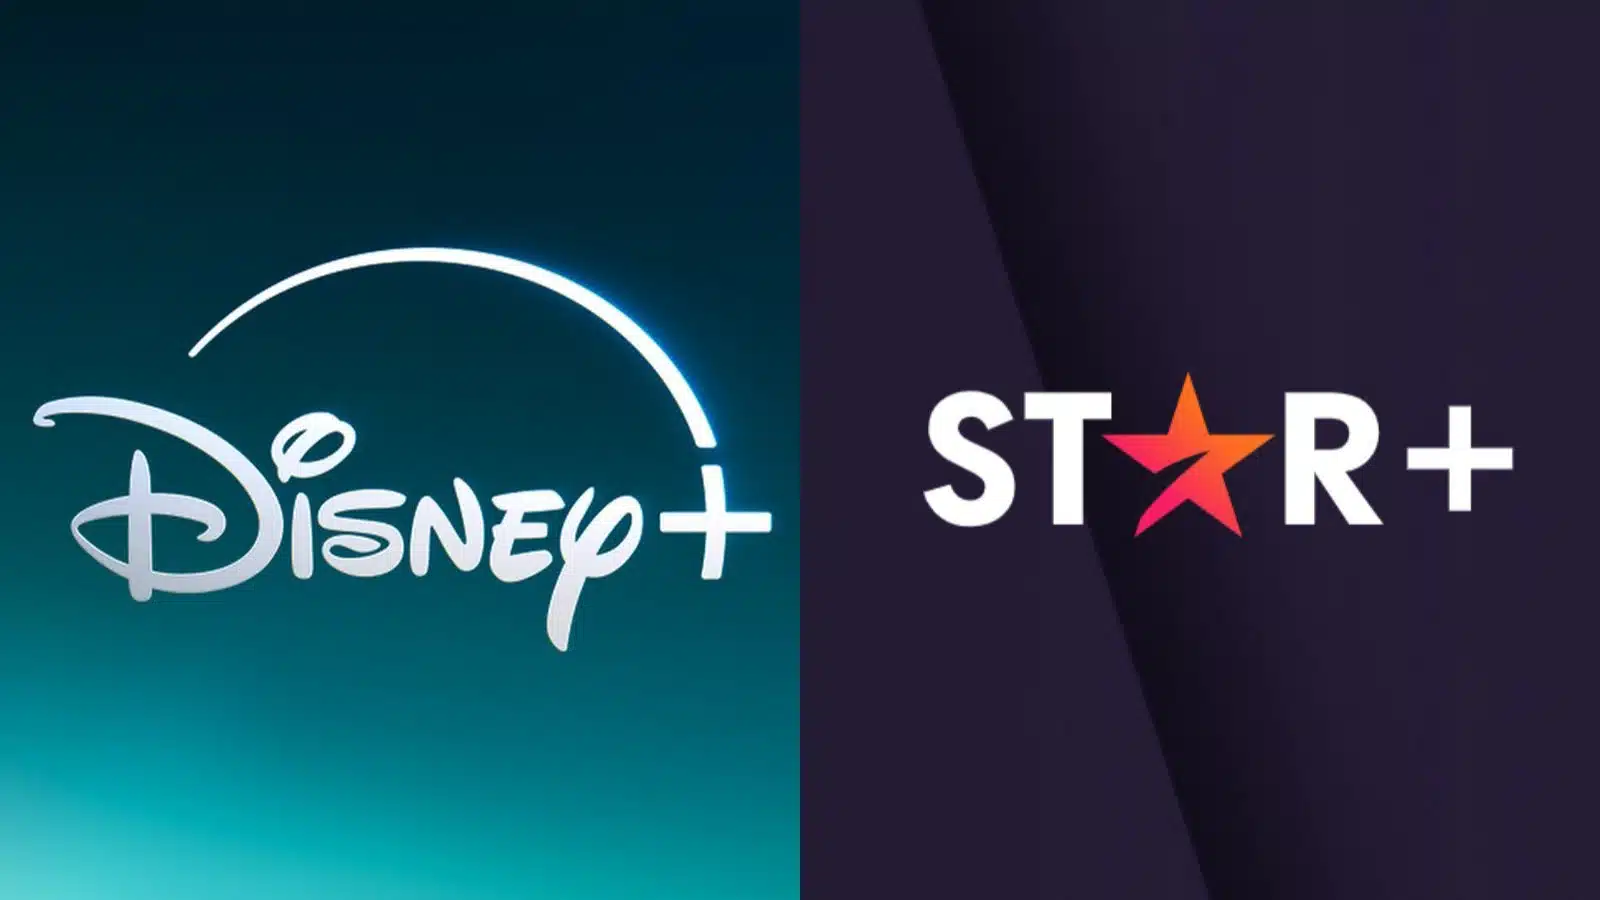 Plataformas de streaming de Disney y Star